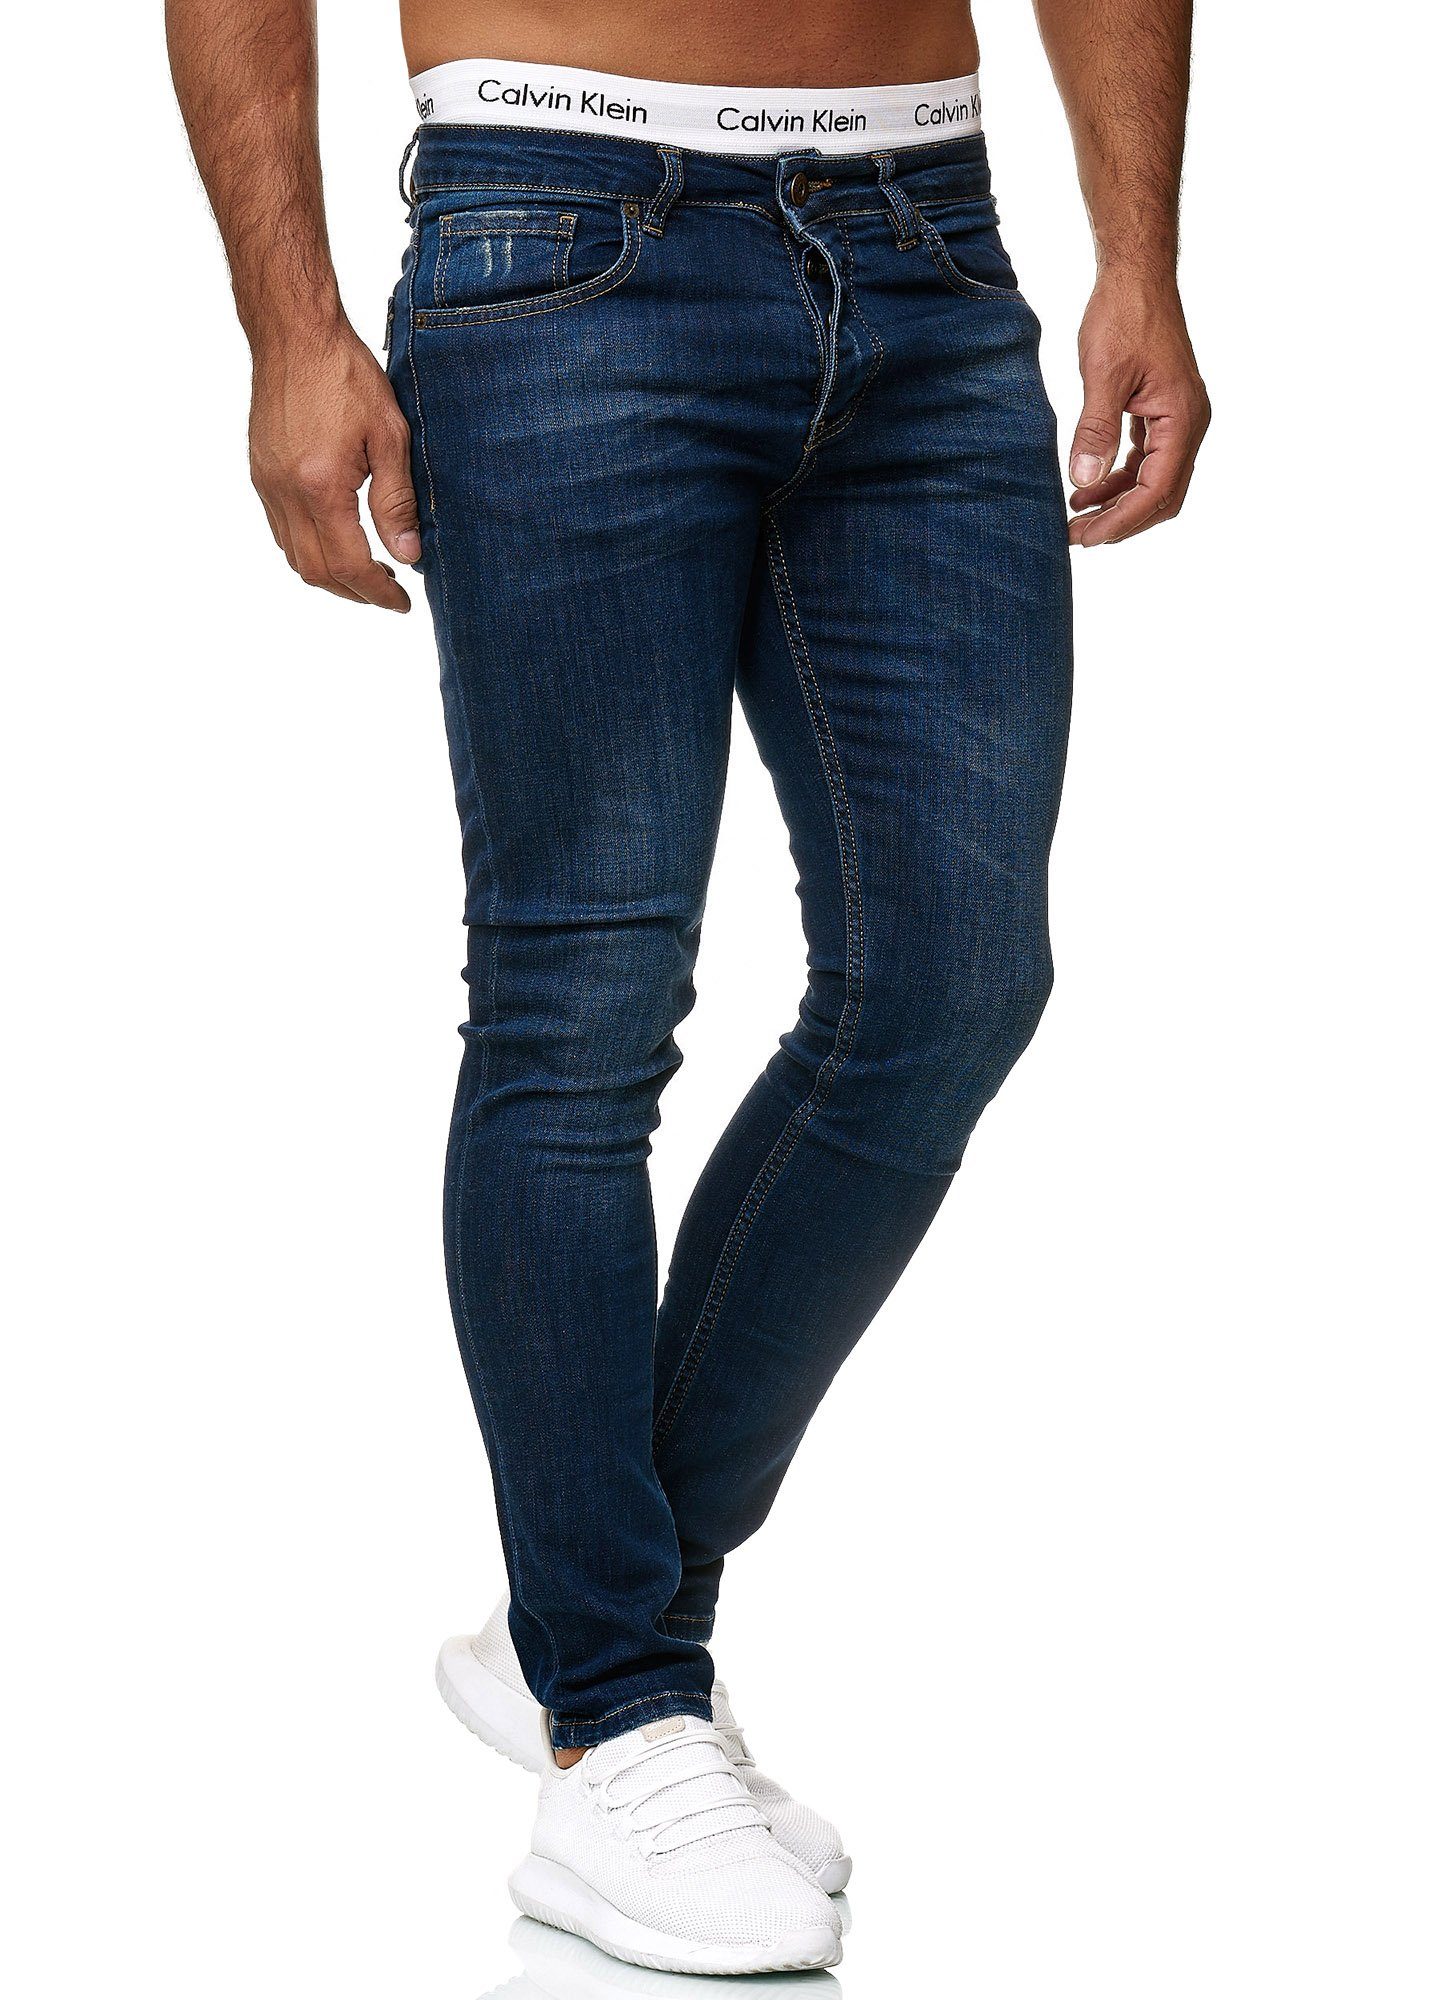 Code47 Skinny-fit-Jeans Code47 Designer Herren Jeans Hose Regular Skinny Fit Jeanshose Basic 607 Deep Blue Used